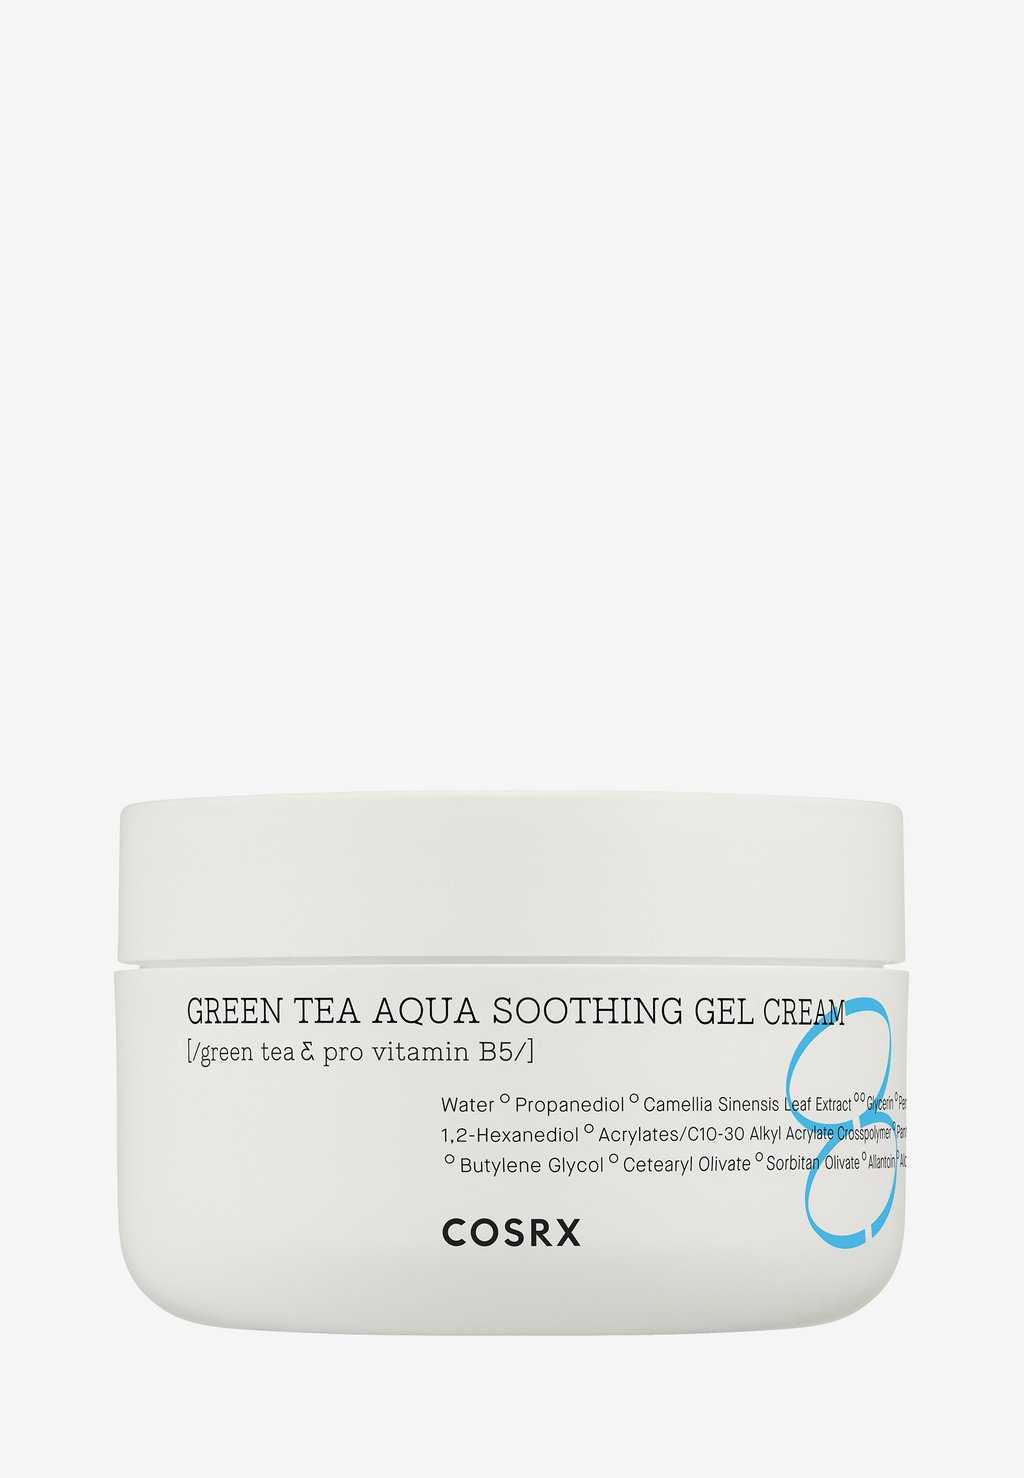 Дневной крем Green Tea Aqua Soothing Gel Cream COSRX уход за лицом cosrx увлажняющий гель крем с экстрактом зелёного чая hydrium green tea aqua soothing gel cream